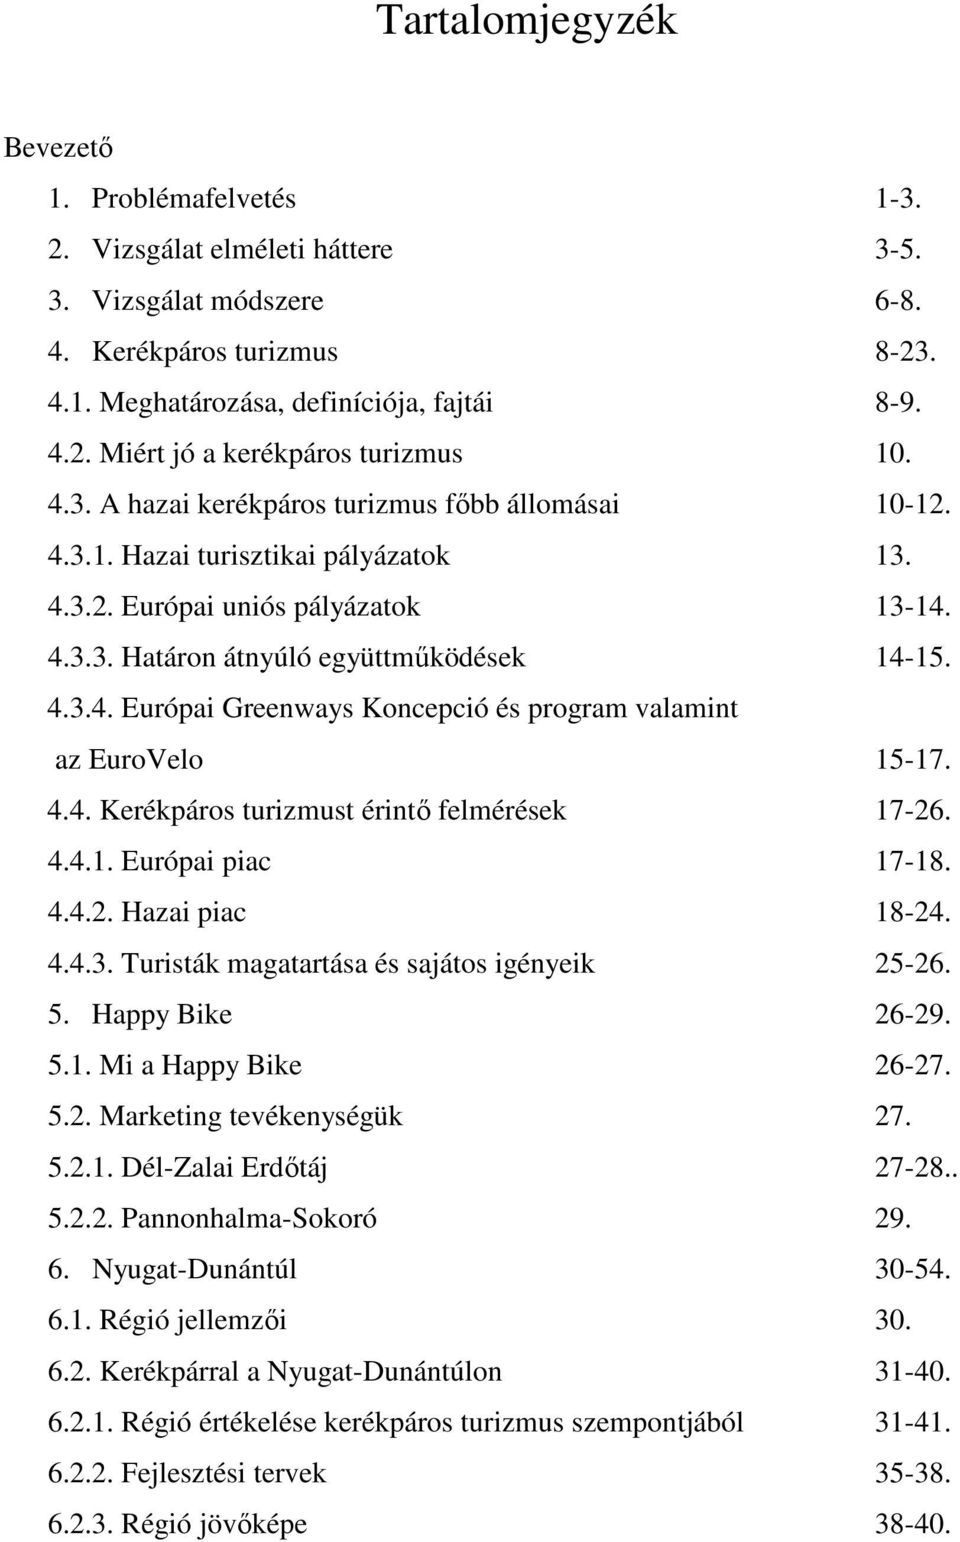 4.4. Kerékpáros turizmust érintı felmérések 17-26. 4.4.1. Európai piac 17-18. 4.4.2. Hazai piac 18-24. 4.4.3. Turisták magatartása és sajátos igényeik 25-26. 5. Happy Bike 26-29. 5.1. Mi a Happy Bike 26-27.